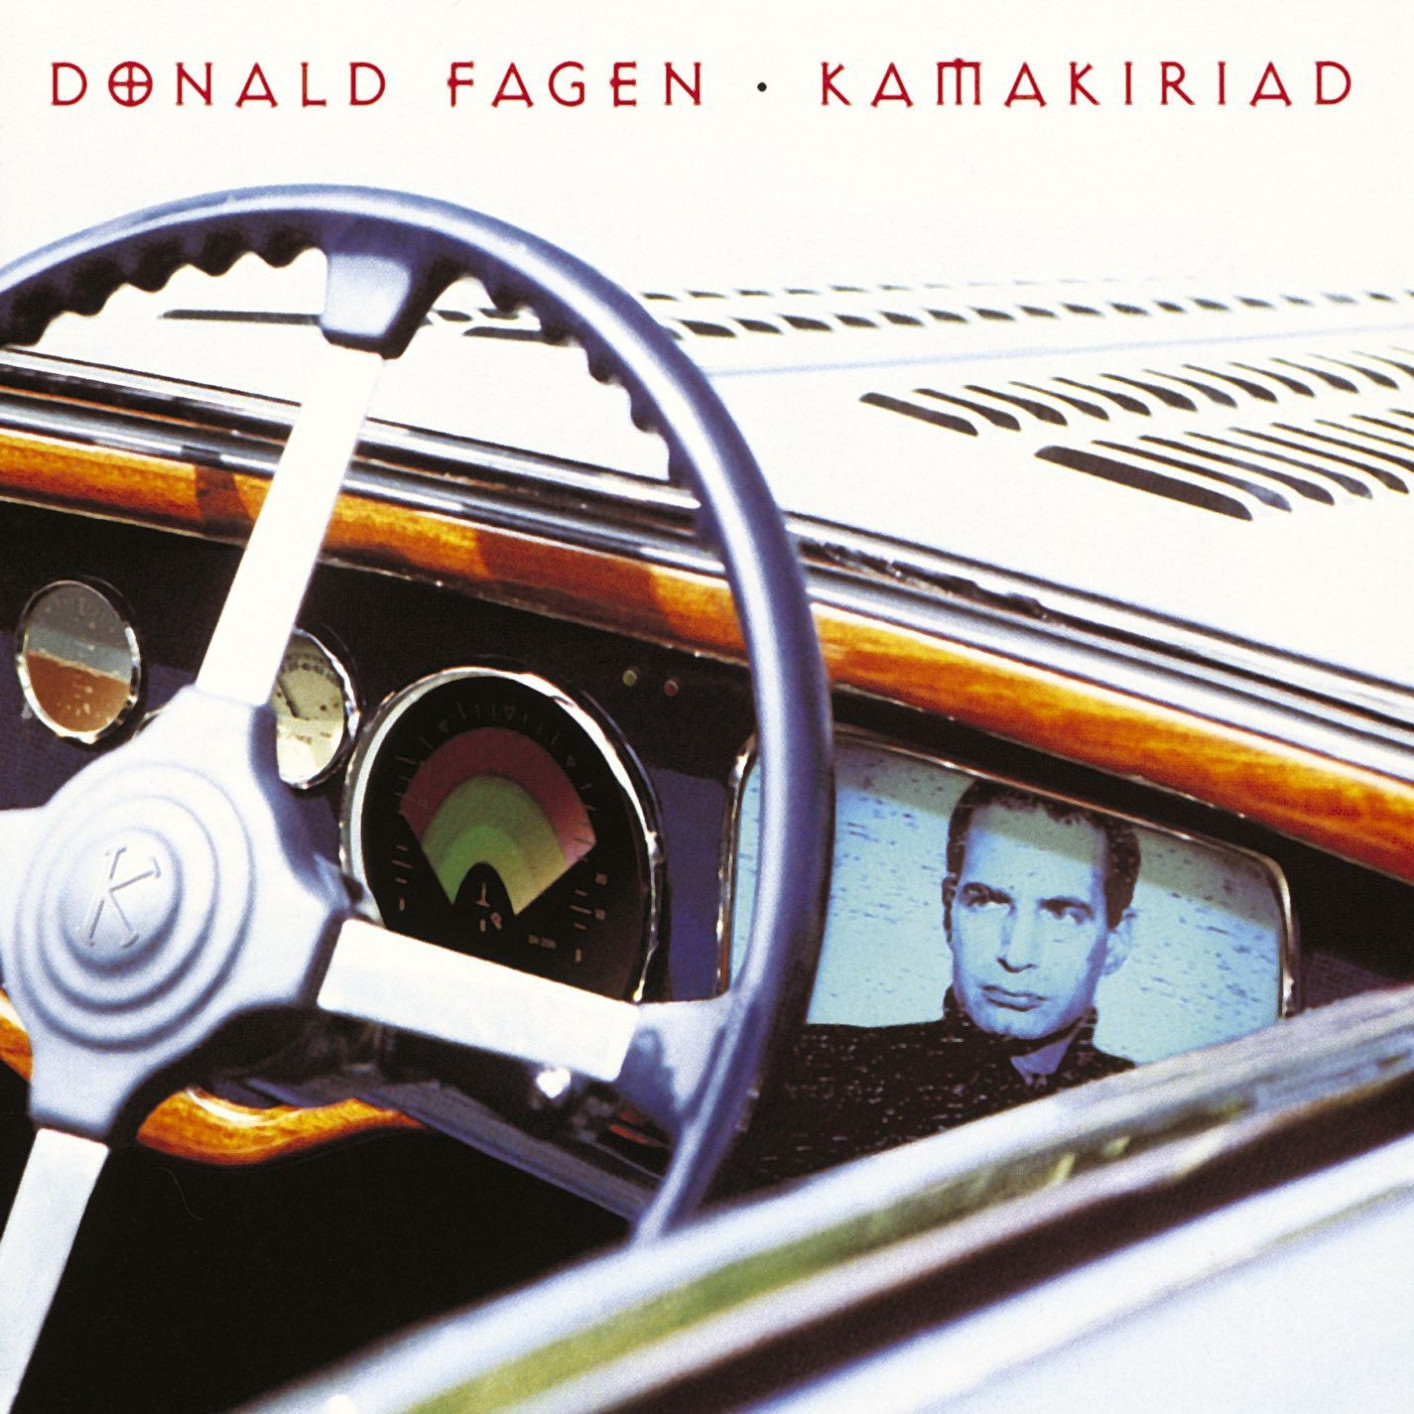 Donald Fagen - Kamakiriad (1993/2012) [Qobuz FLAC 24bit/96kHz]